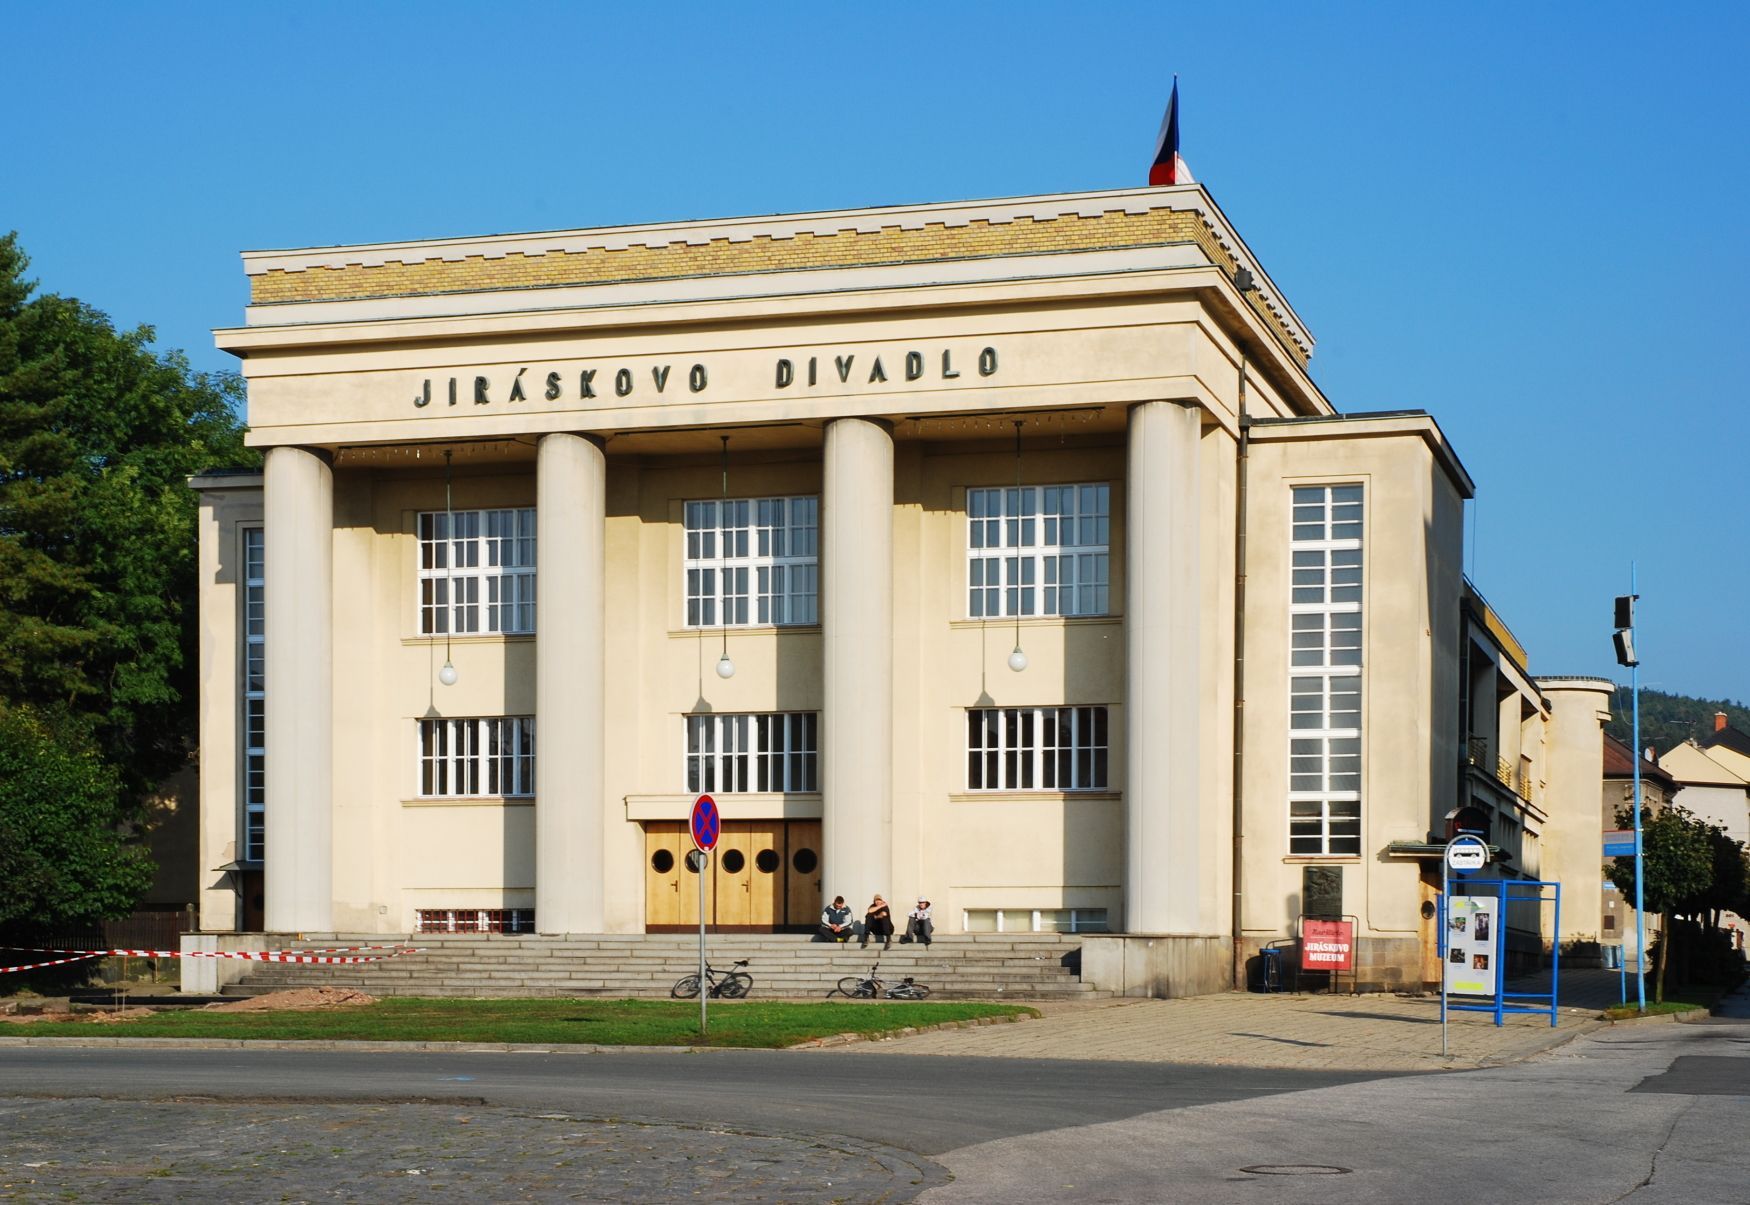 Jiráskova divadlo, Hronov